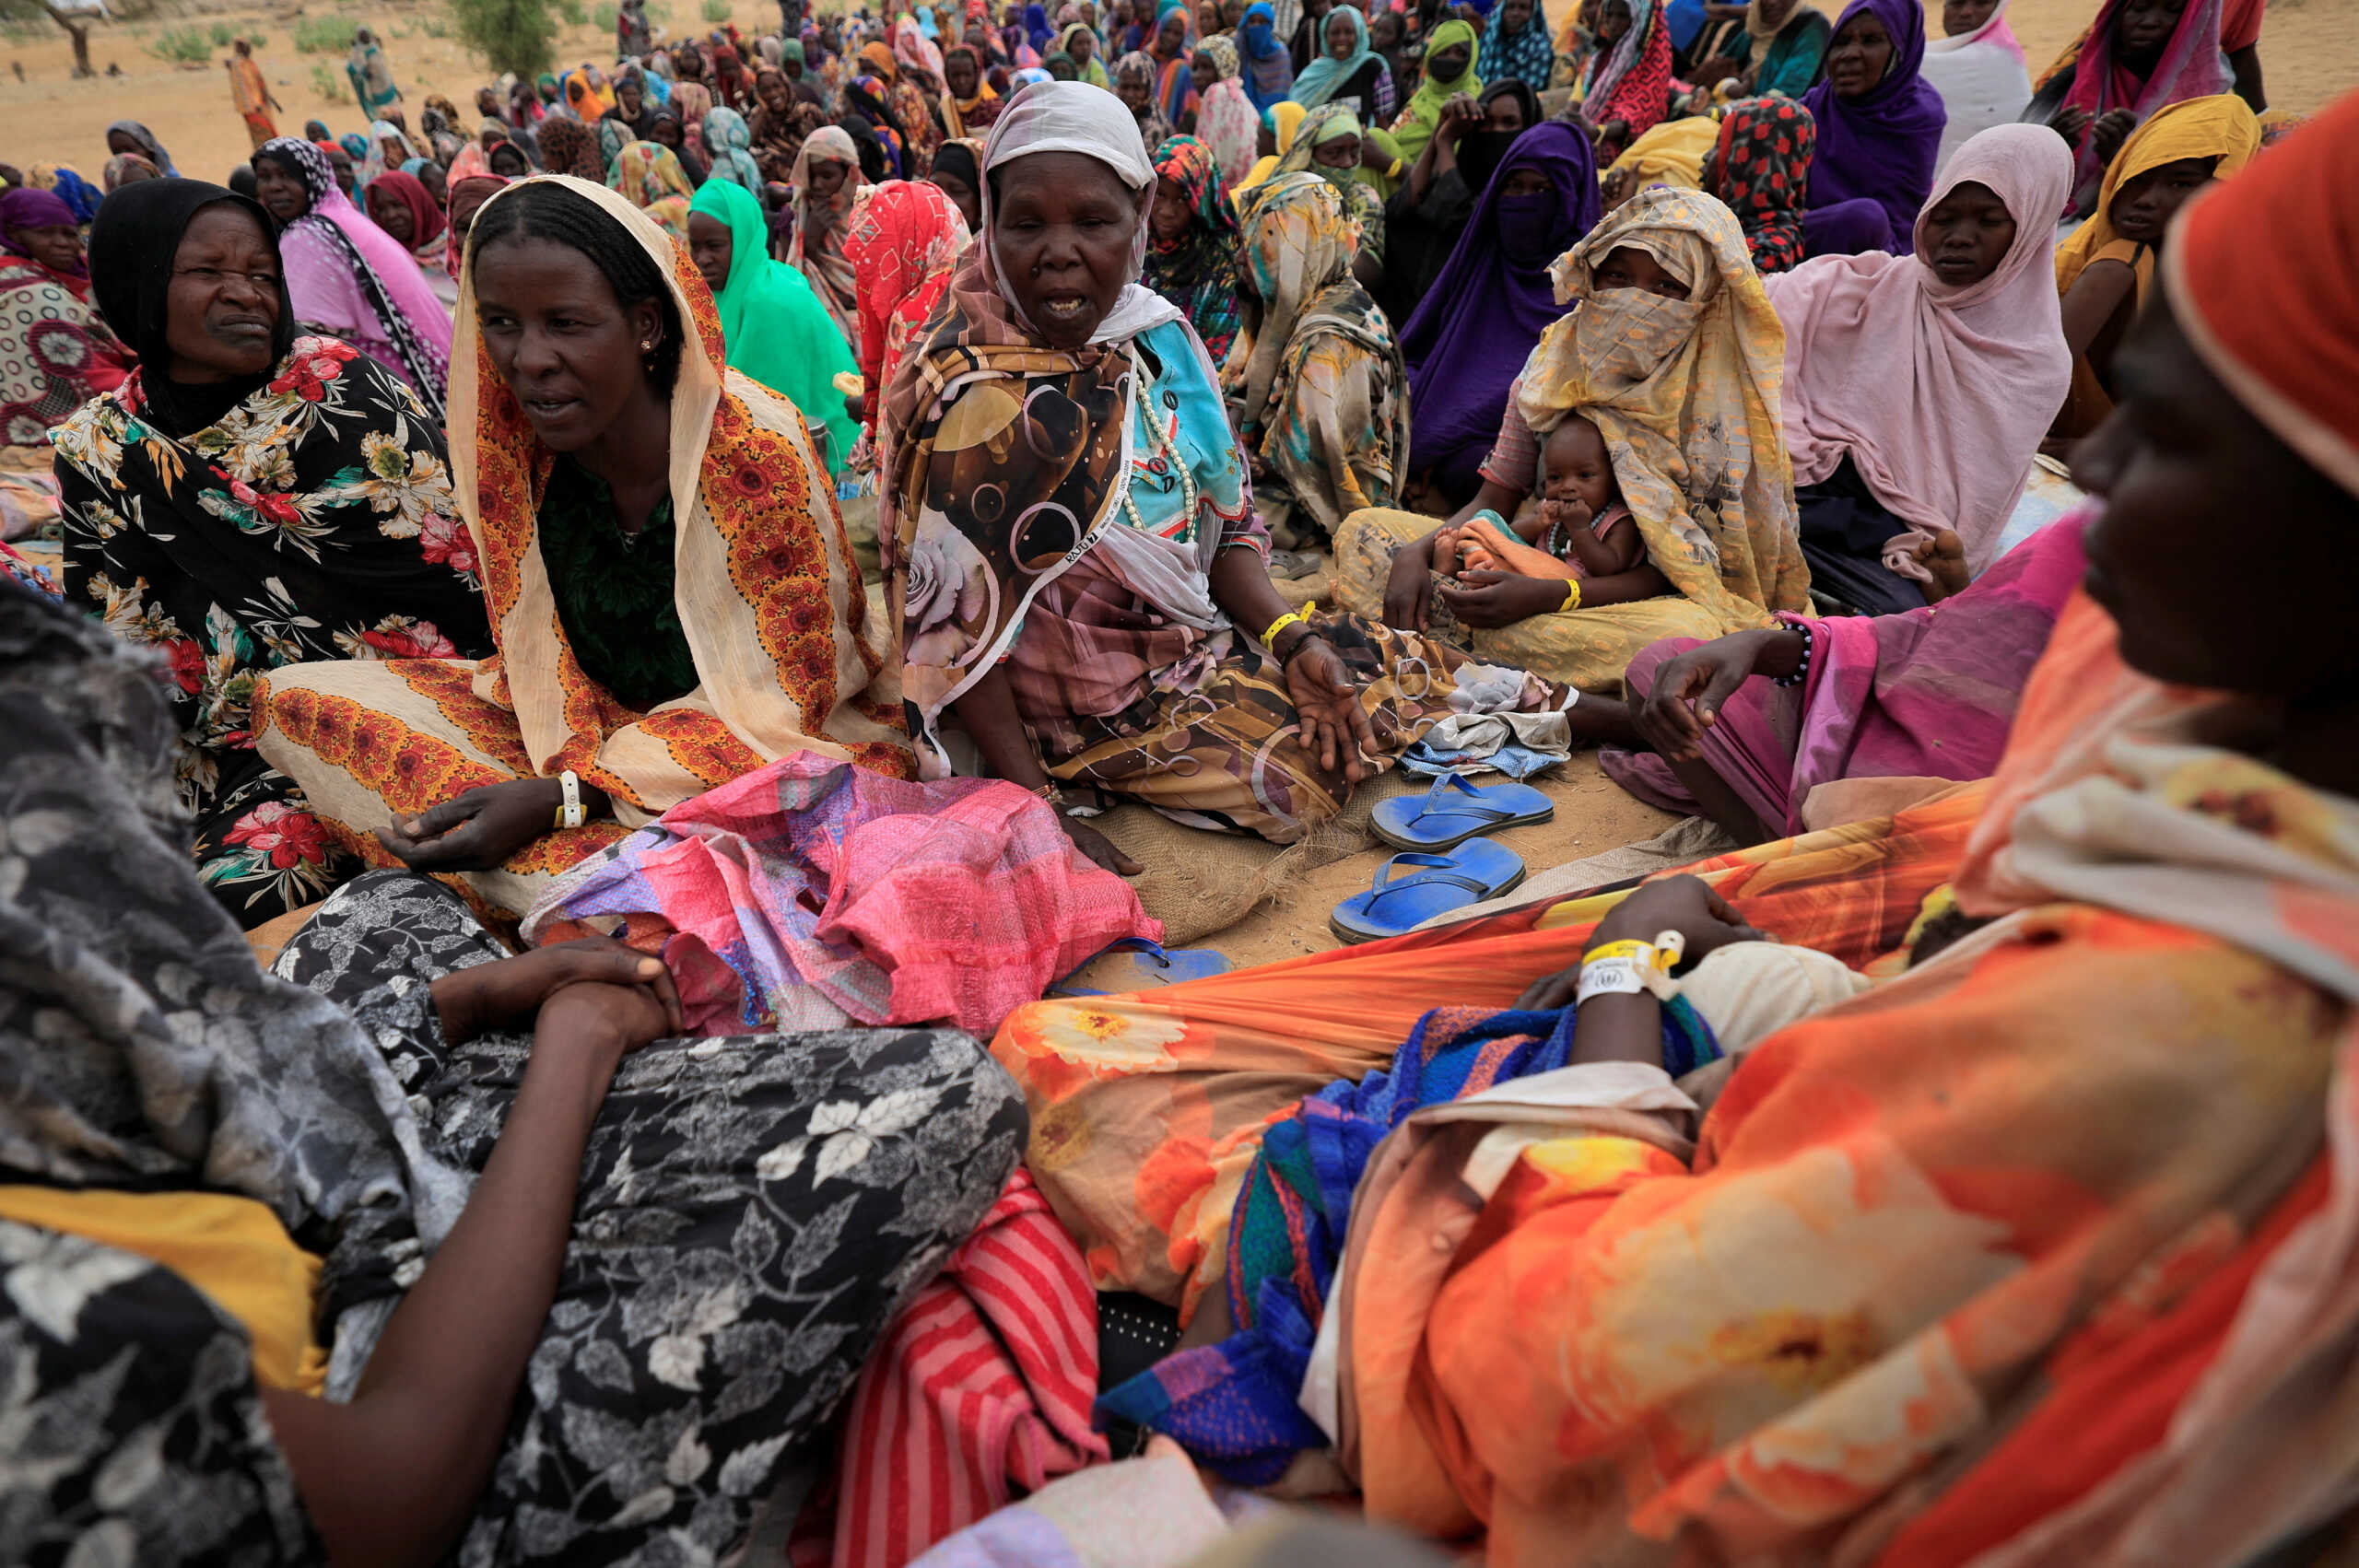 Σουδάν: Ένας μήνας εμφυλίου πολέμου – Πάνω από 25 εκατ. άνθρωποι χρειάζονται ανθρωπιστική βοήθεια